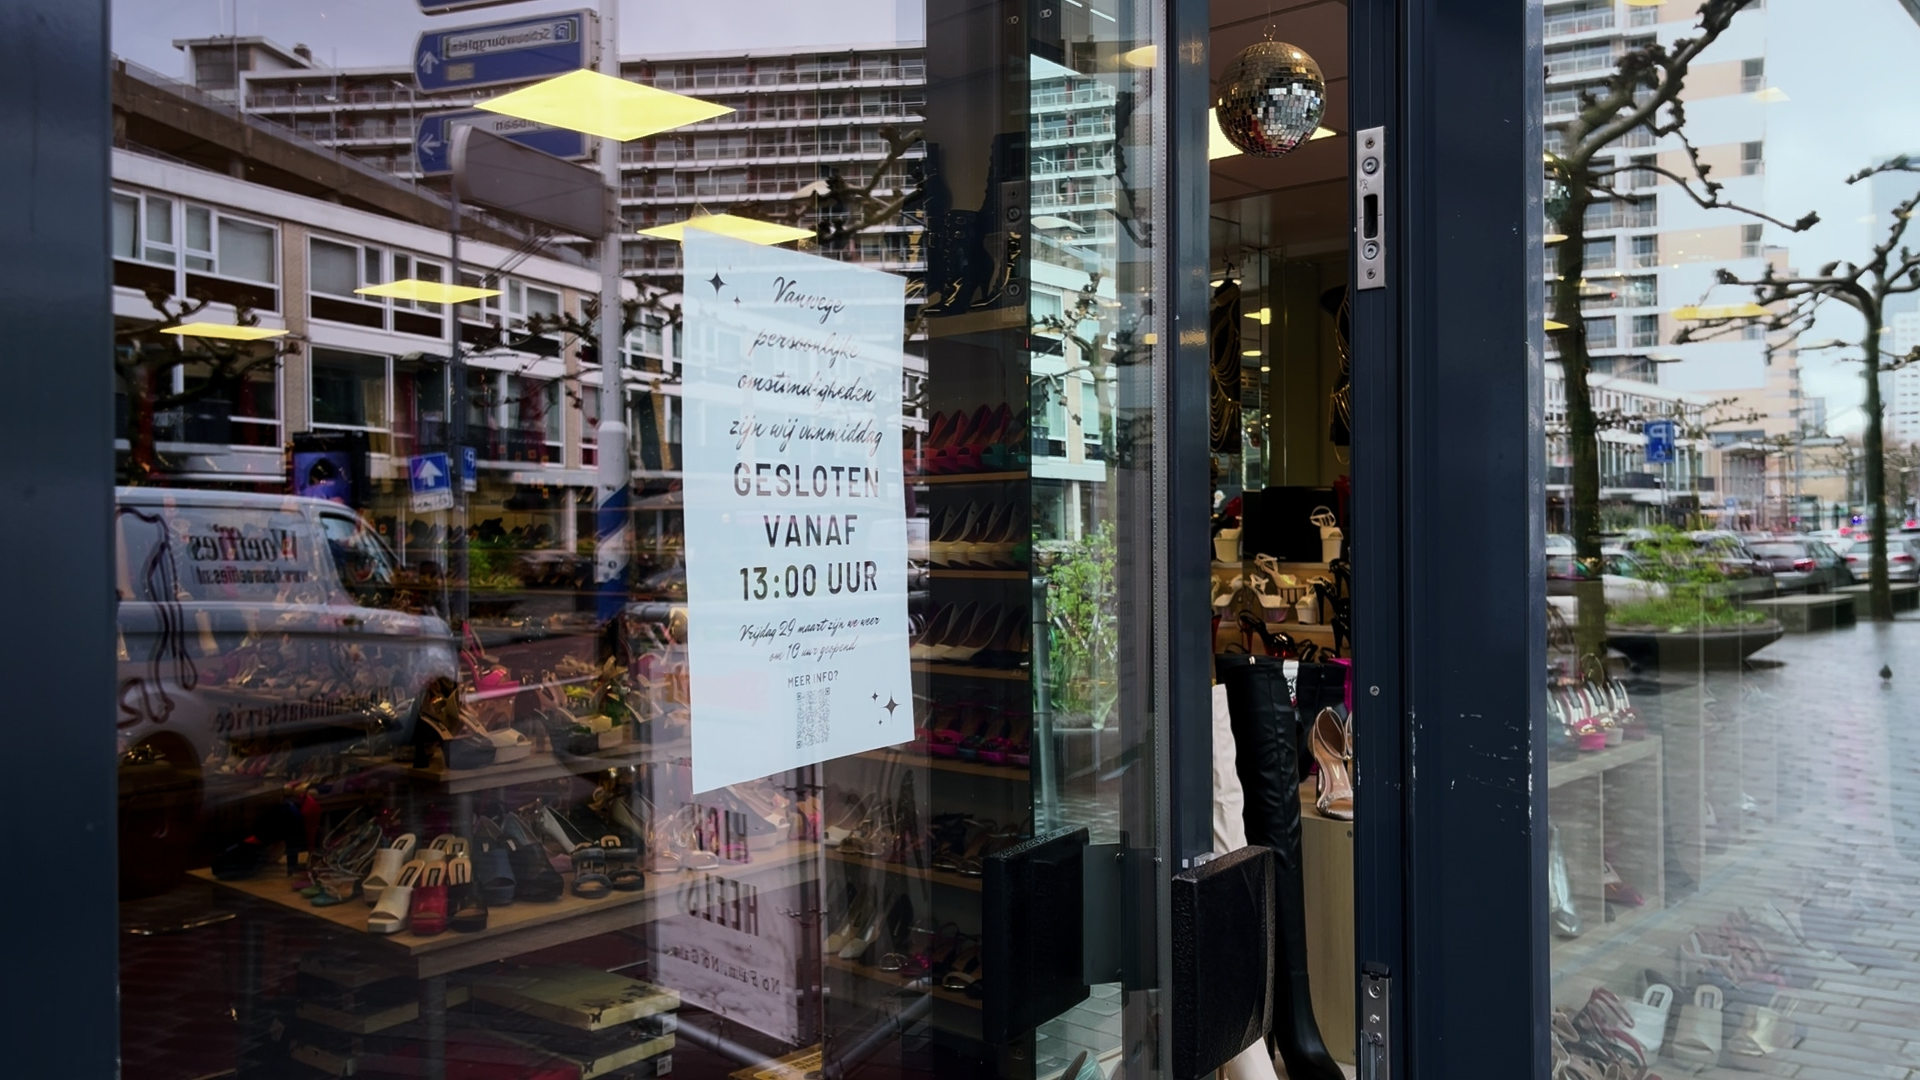 Grondlegger van hakkenwinkel Silhouette overleden: ‘Het is best een iconische plek’